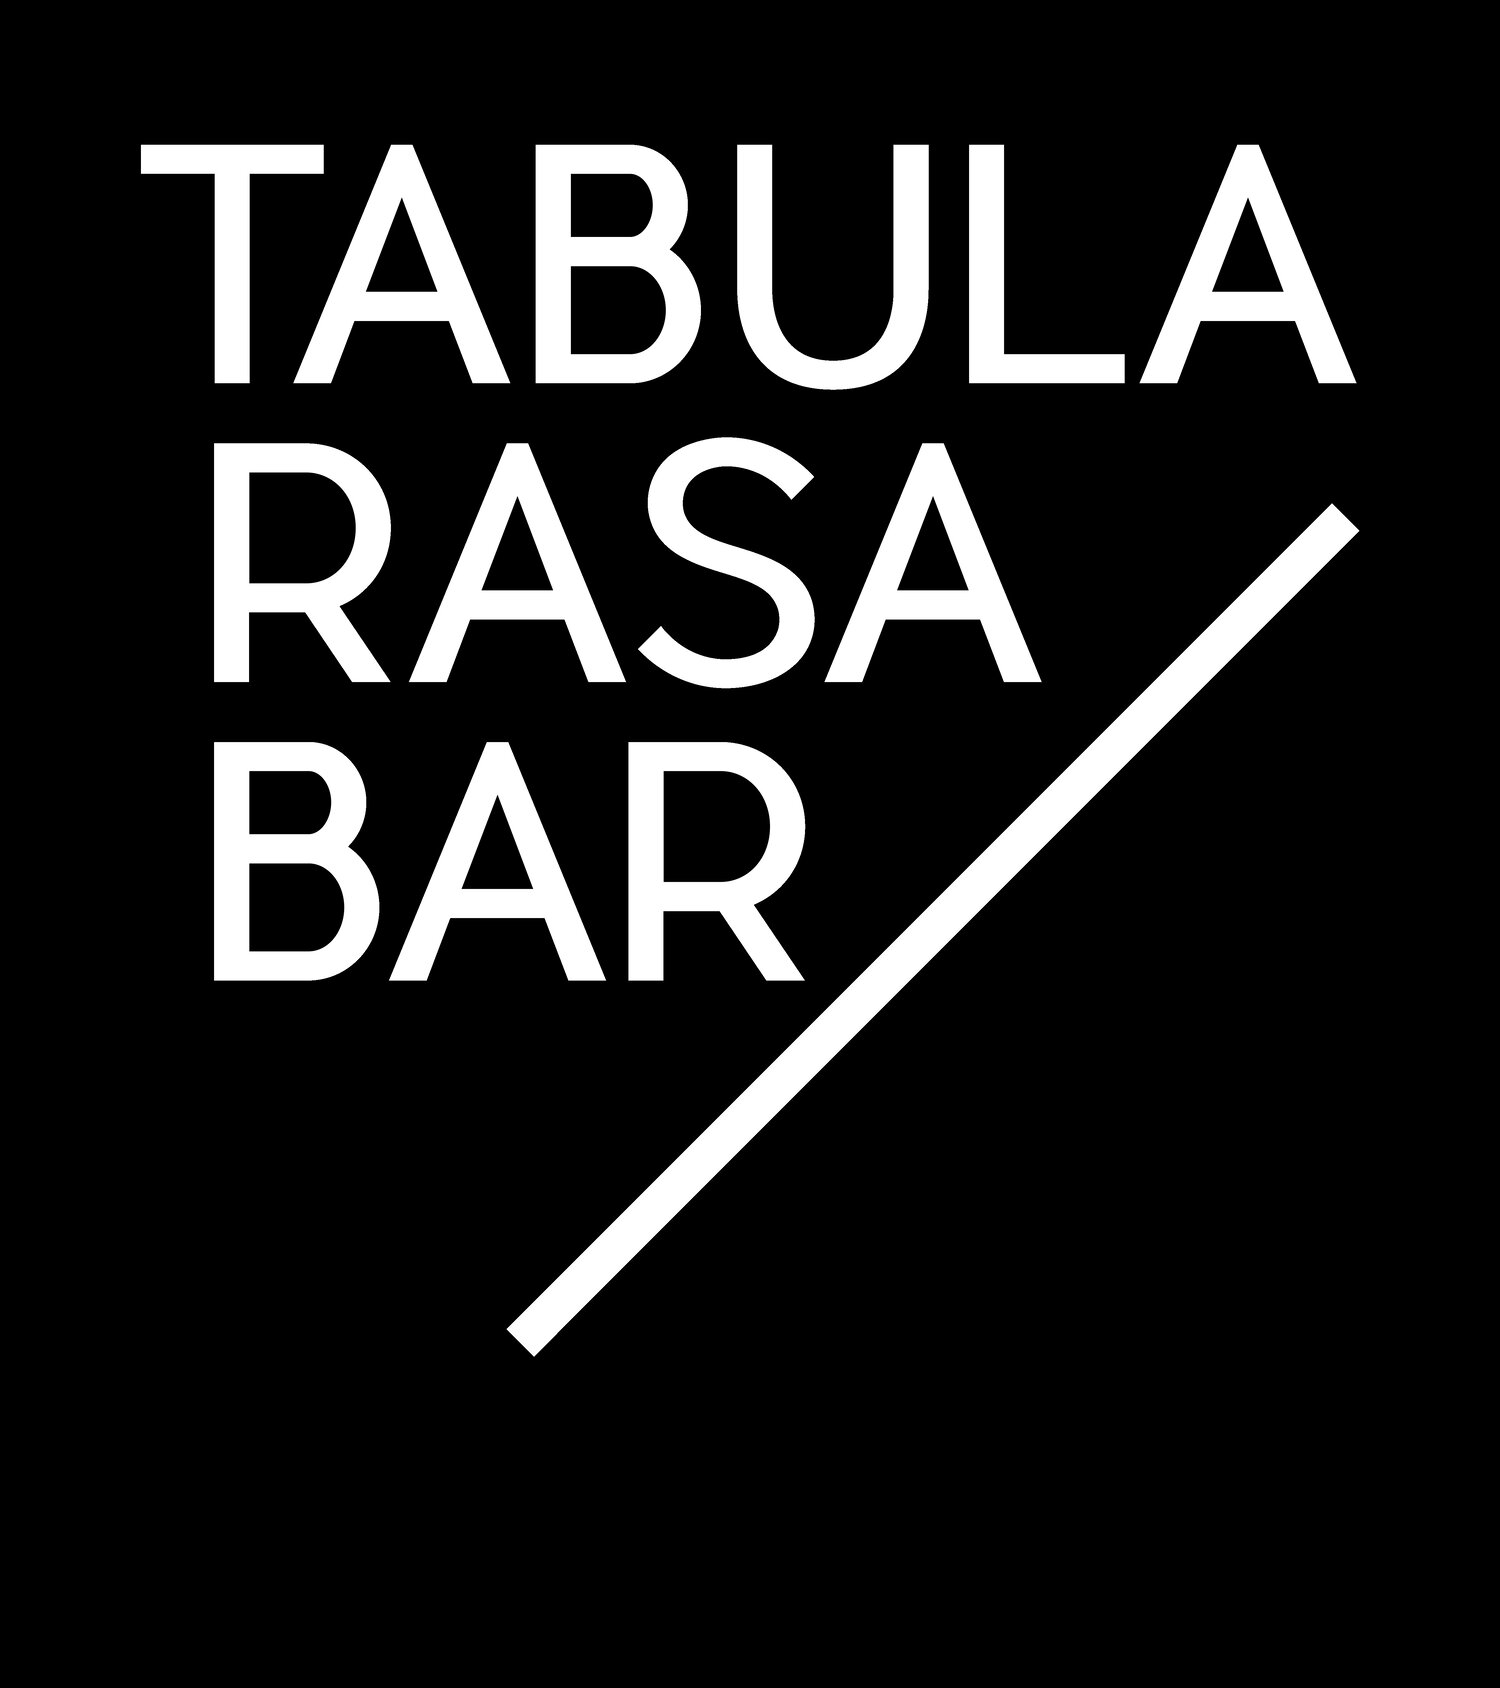 Tabula Rasa Bar